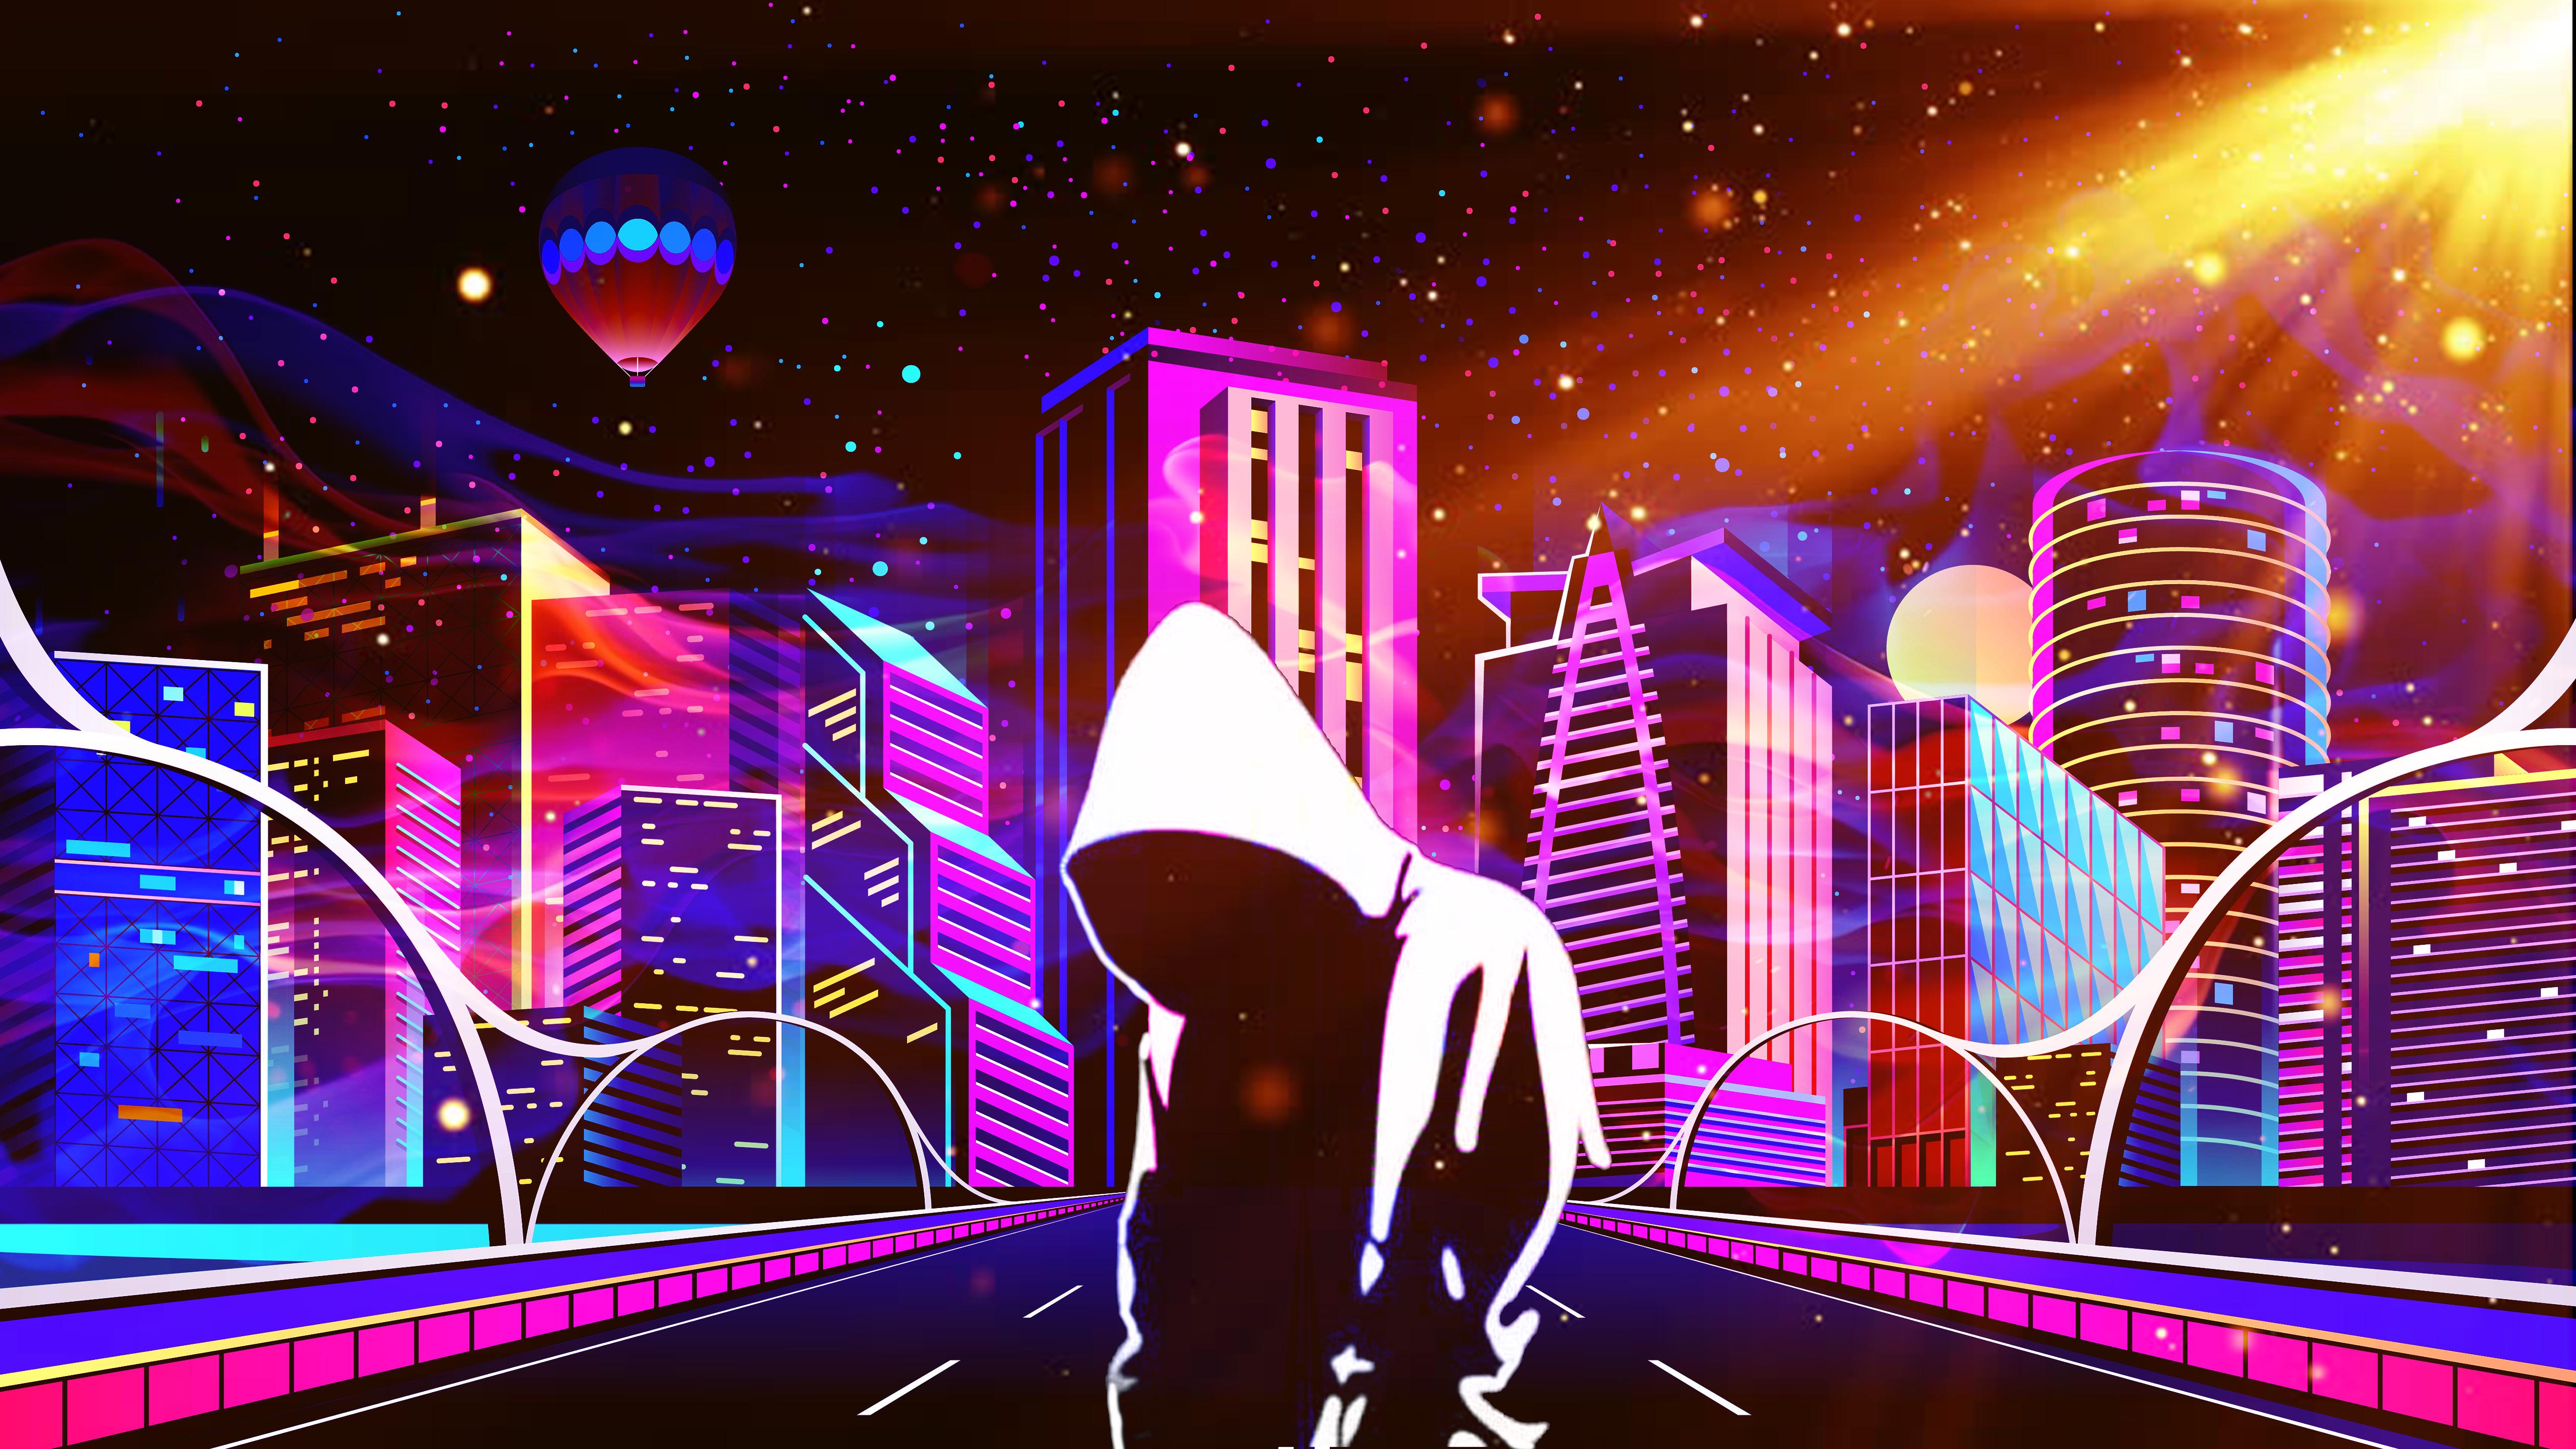 5120 x 2880 · jpeg - Scifi Neon Anonymus Future City